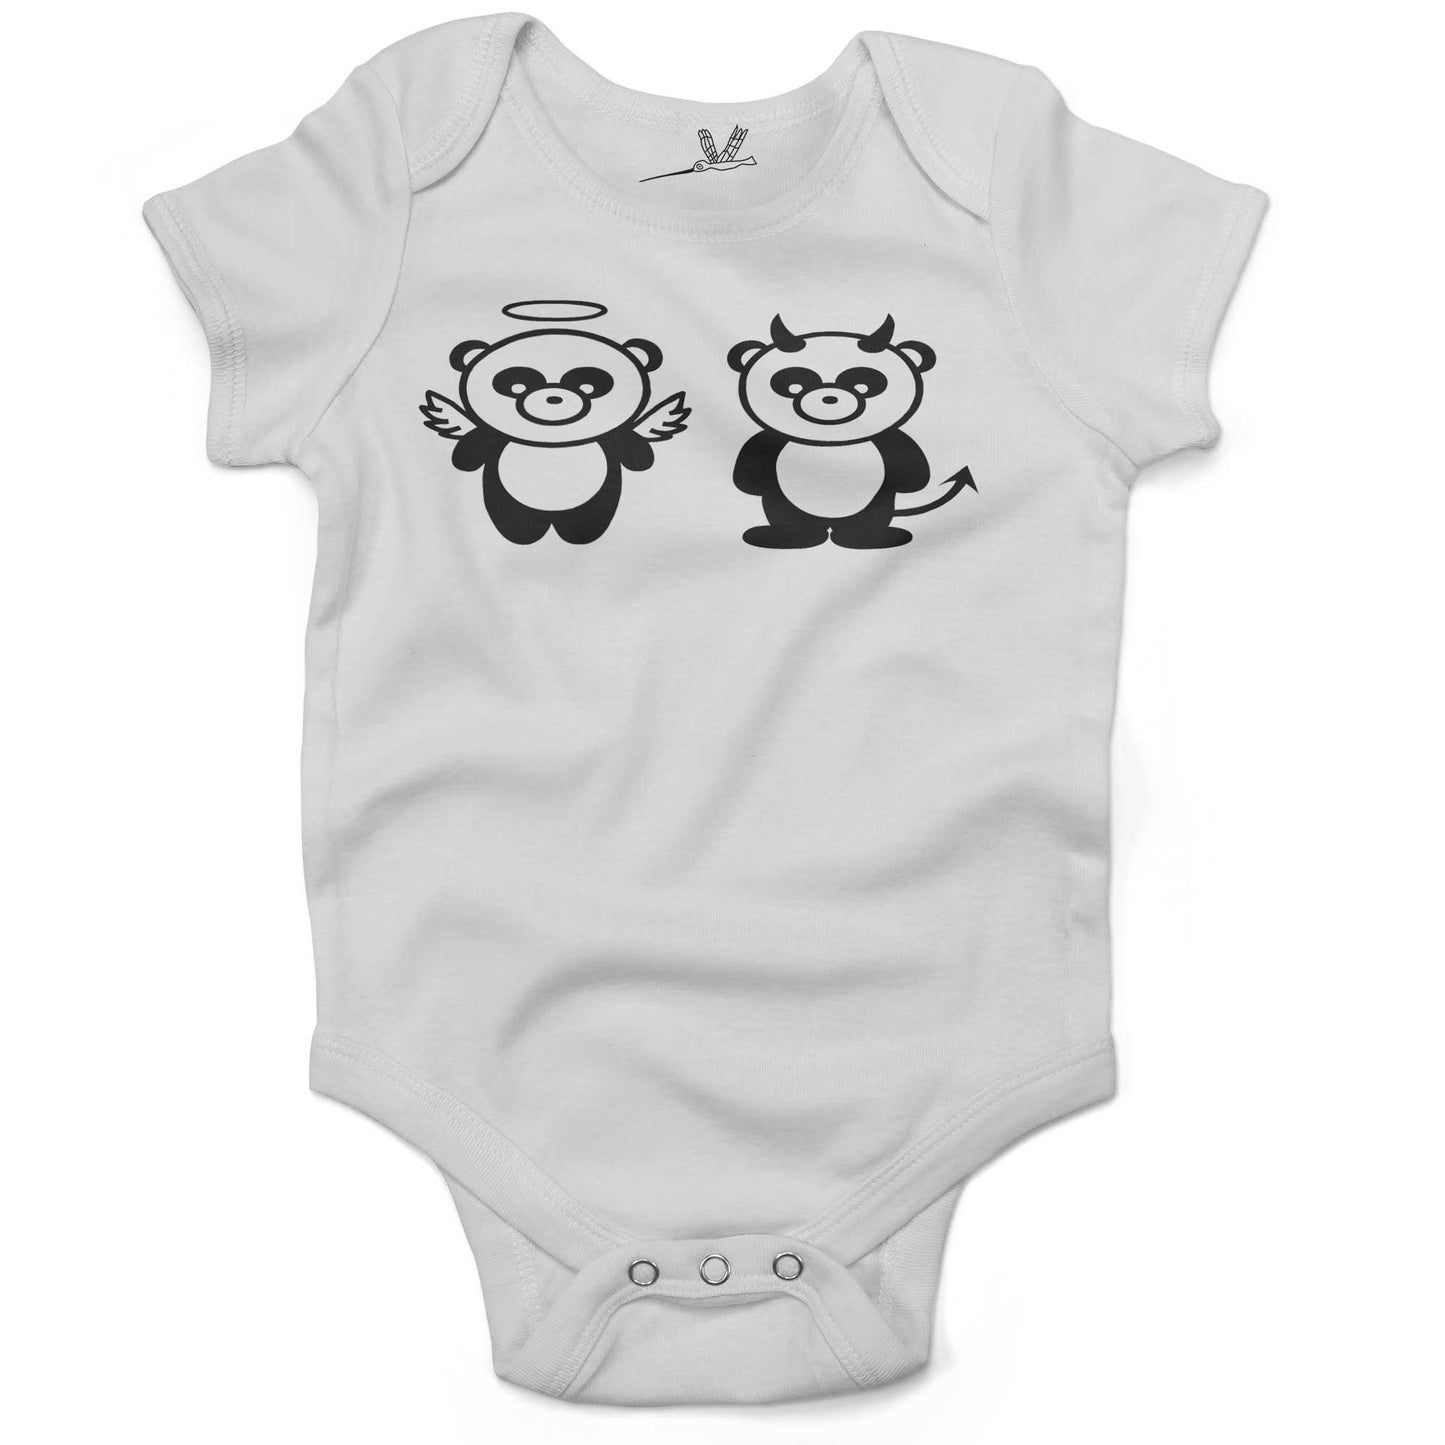 Good Panda, Bad Panda Infant Bodysuit or Raglan Tee-White-3-6 months